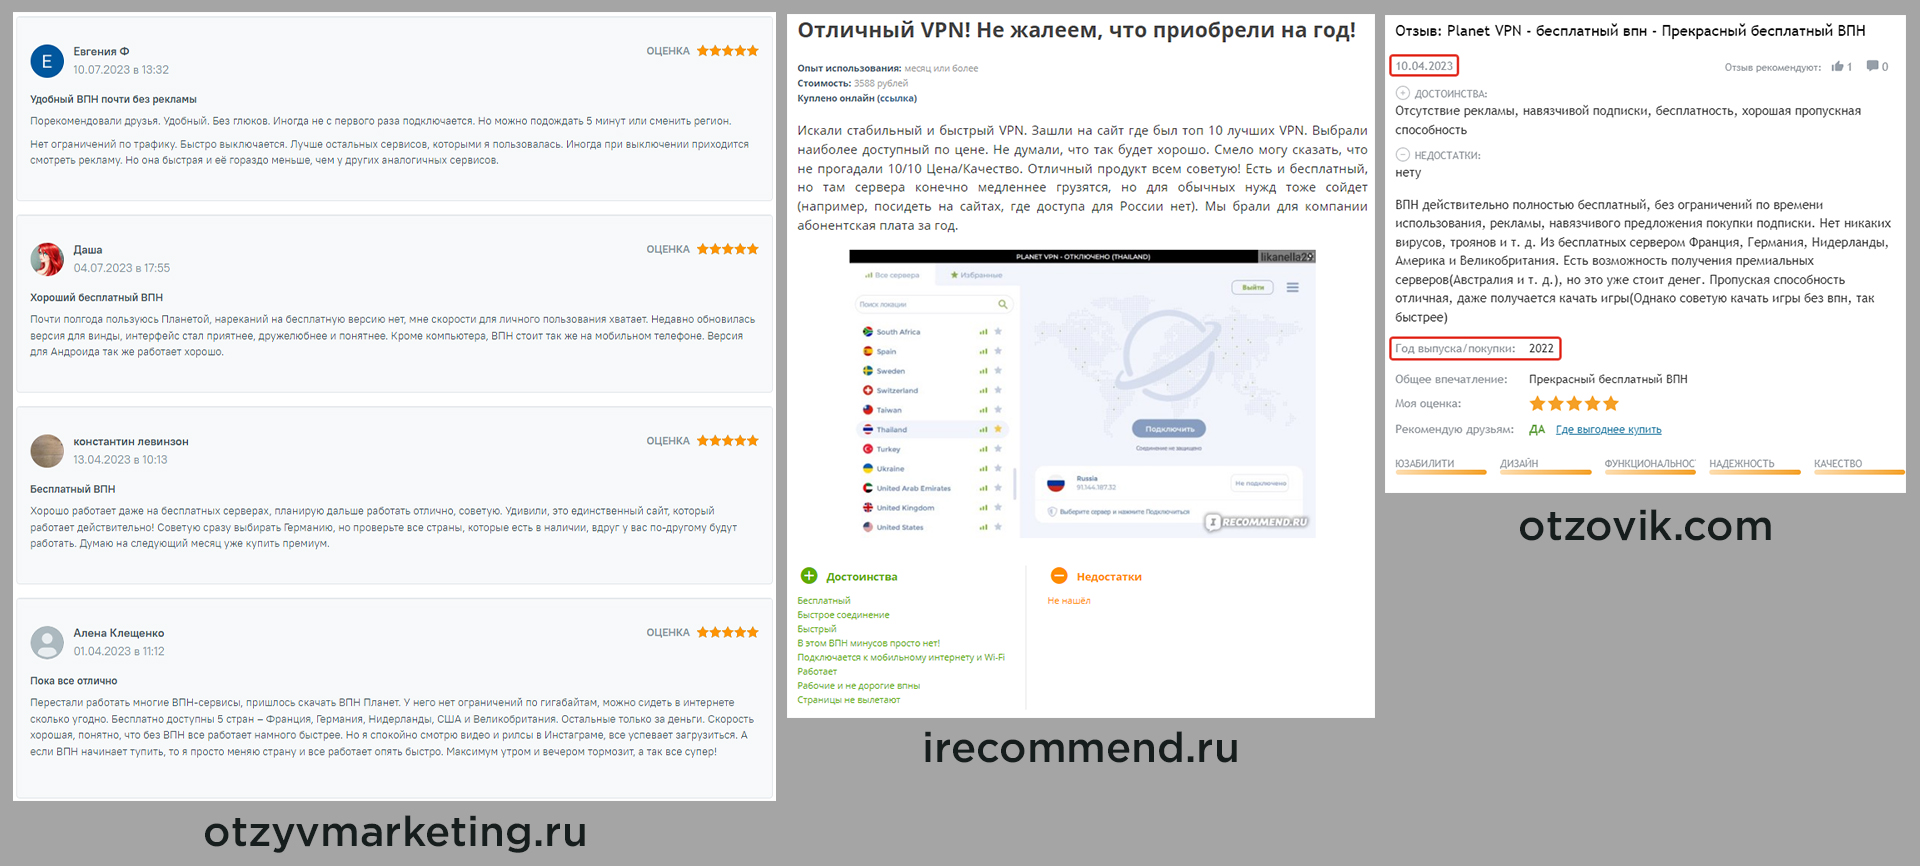 Хорошие отзывы о Planet VPN с сайтов otzovik.com, irecommend.ru, otzyvmarketing.ru.